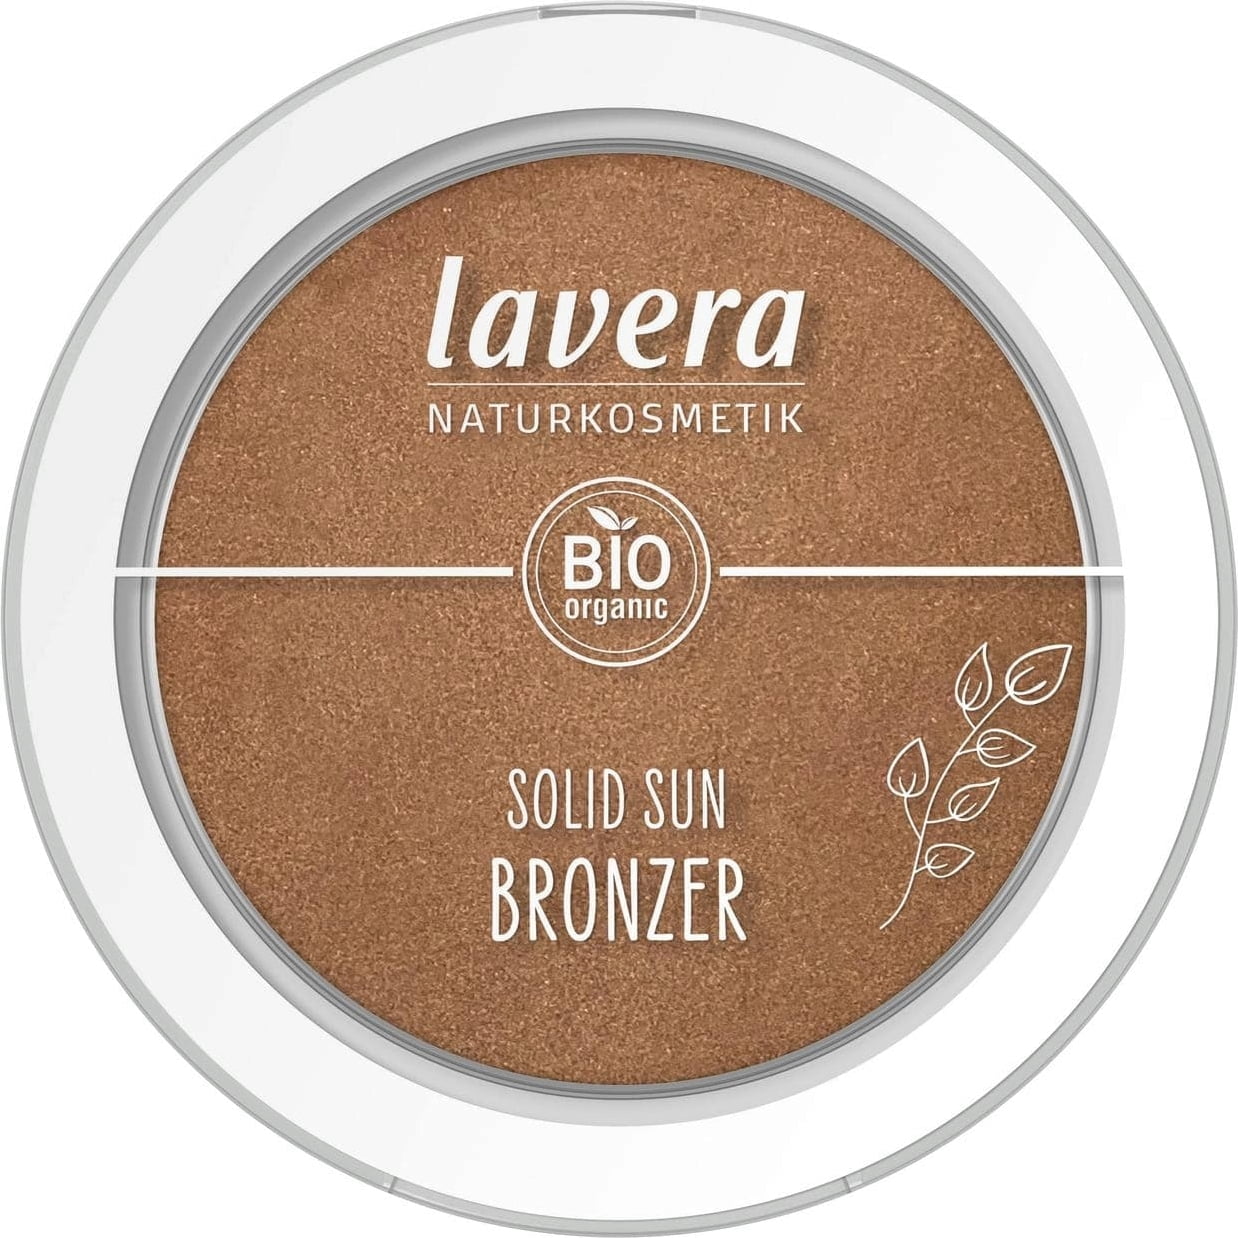 Zobrazit detail výrobku Lavera Bronzer Solid Sun (Bronzer) 5,5 g 01 Desert Sun